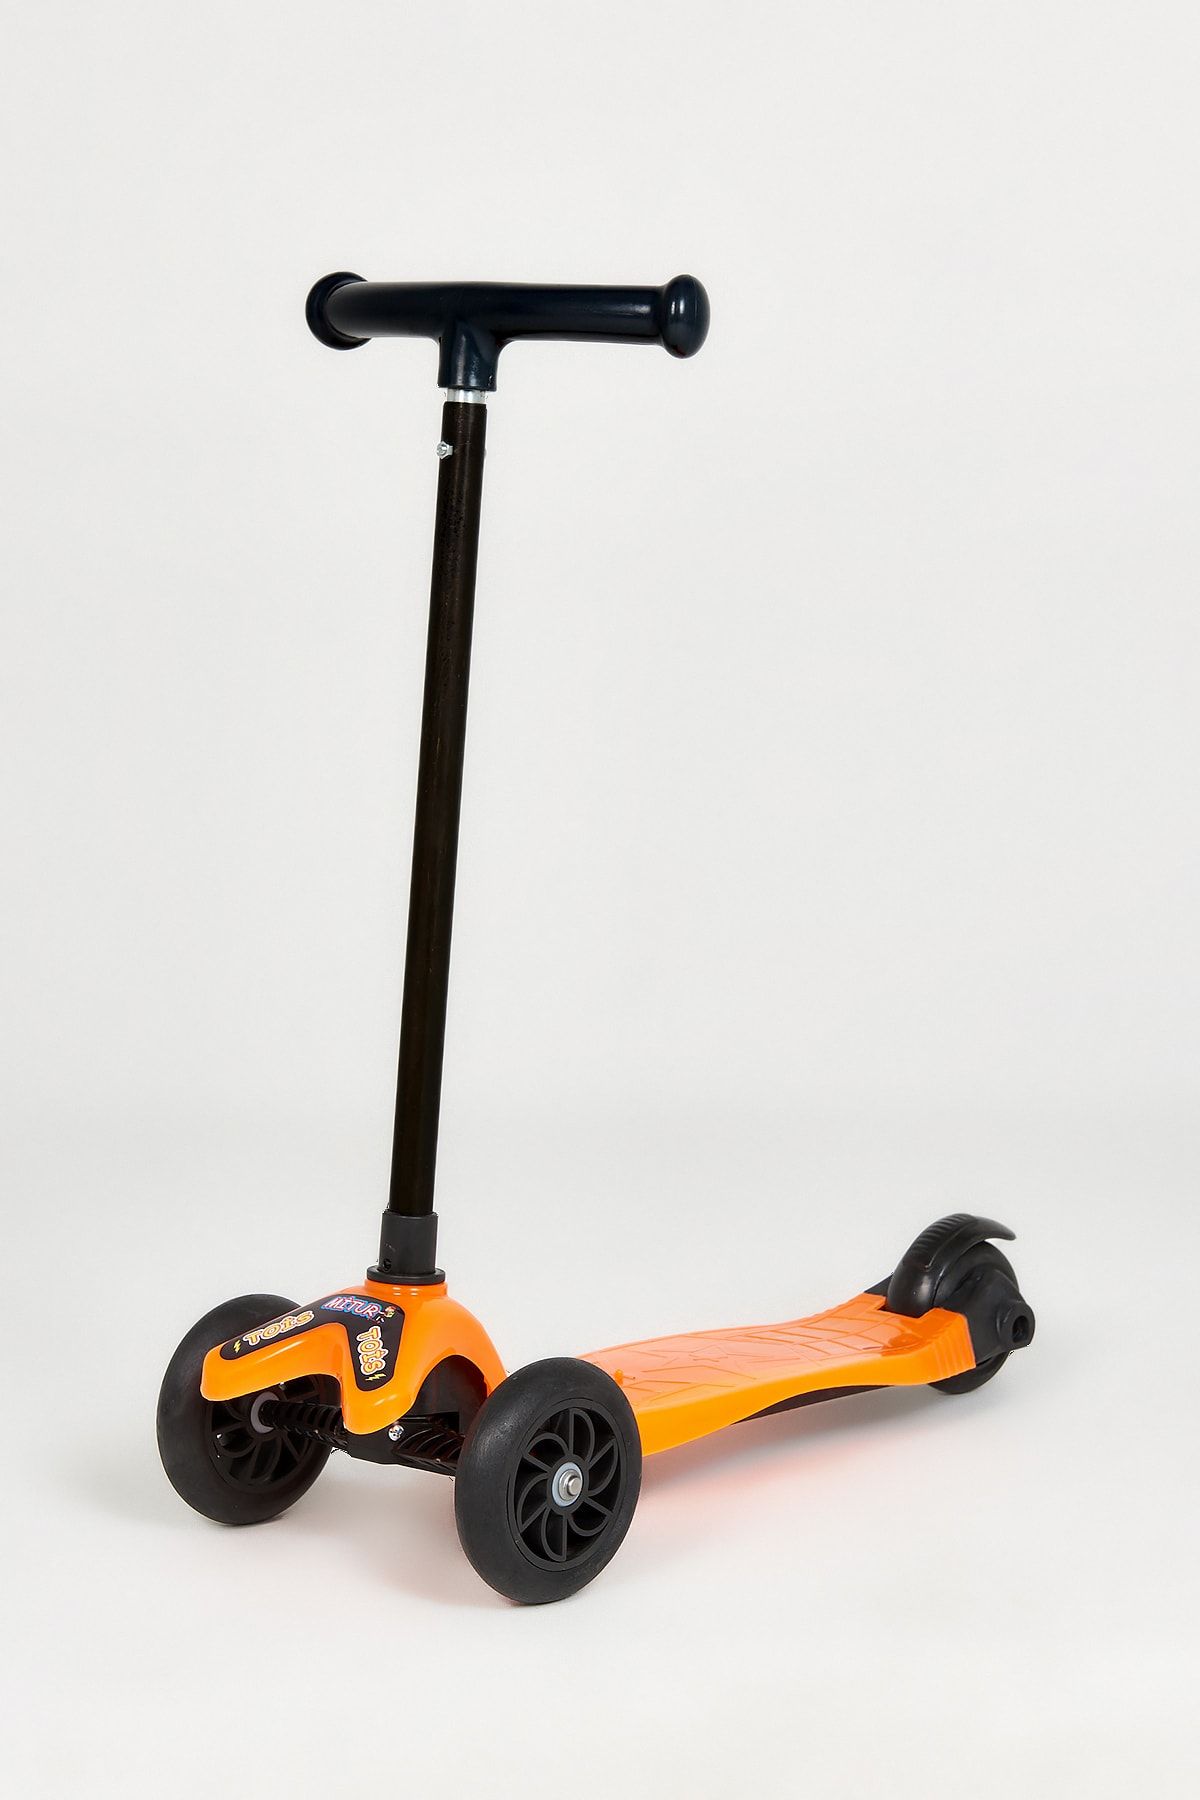 Tois Çocuk Turuncu Mitur 3 Tekerlekli Yükseklik Ayarlı Scooter